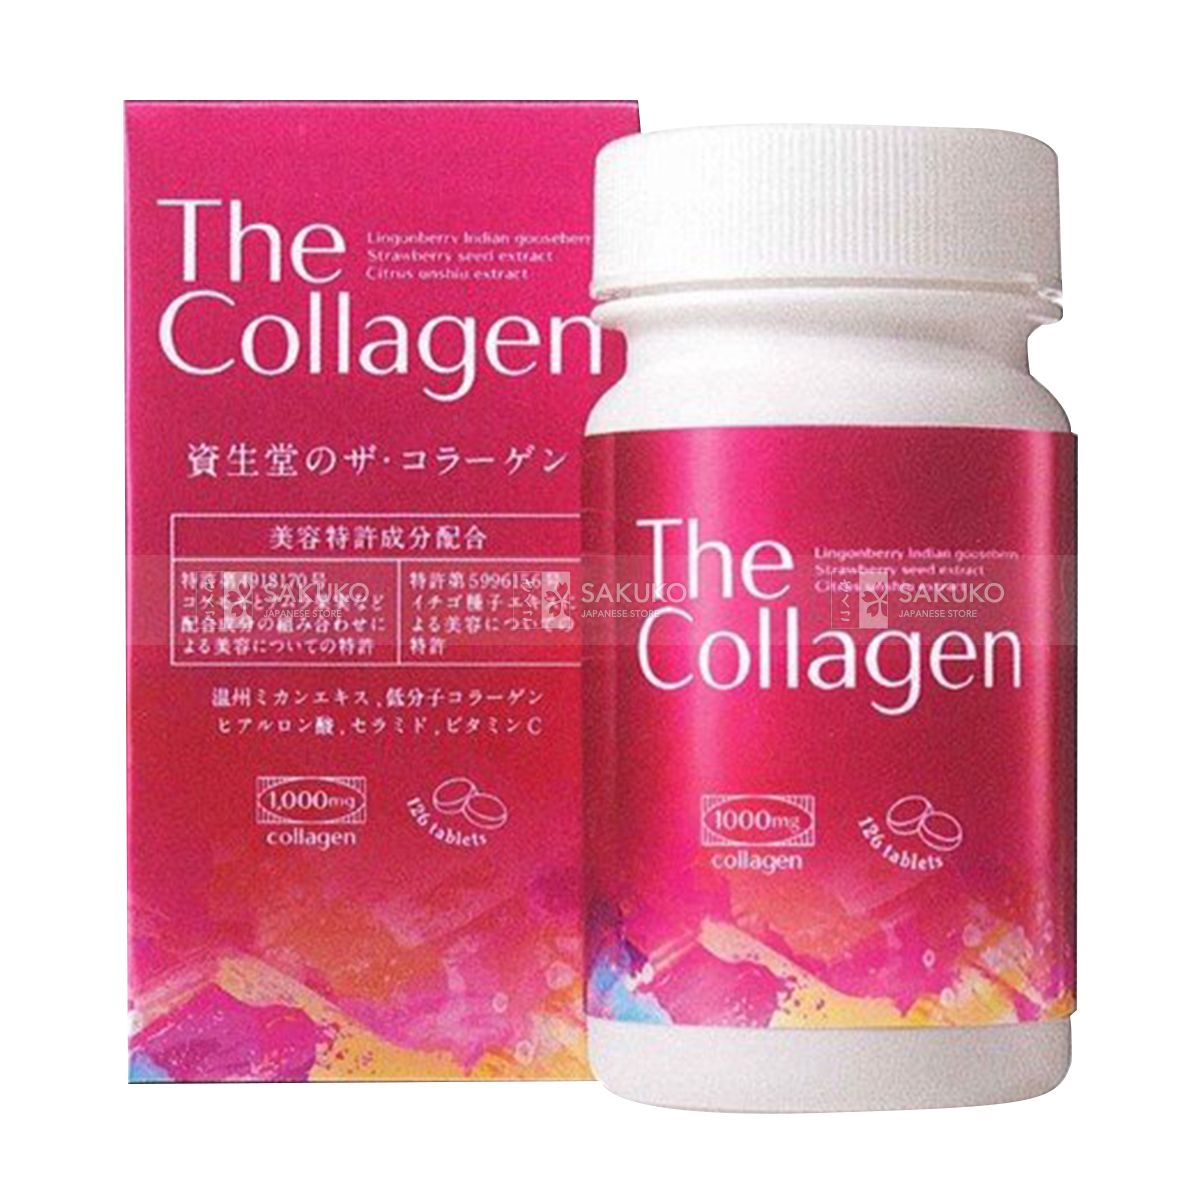  SHISEIDO- Viên uống The Collagen (126 viên) 